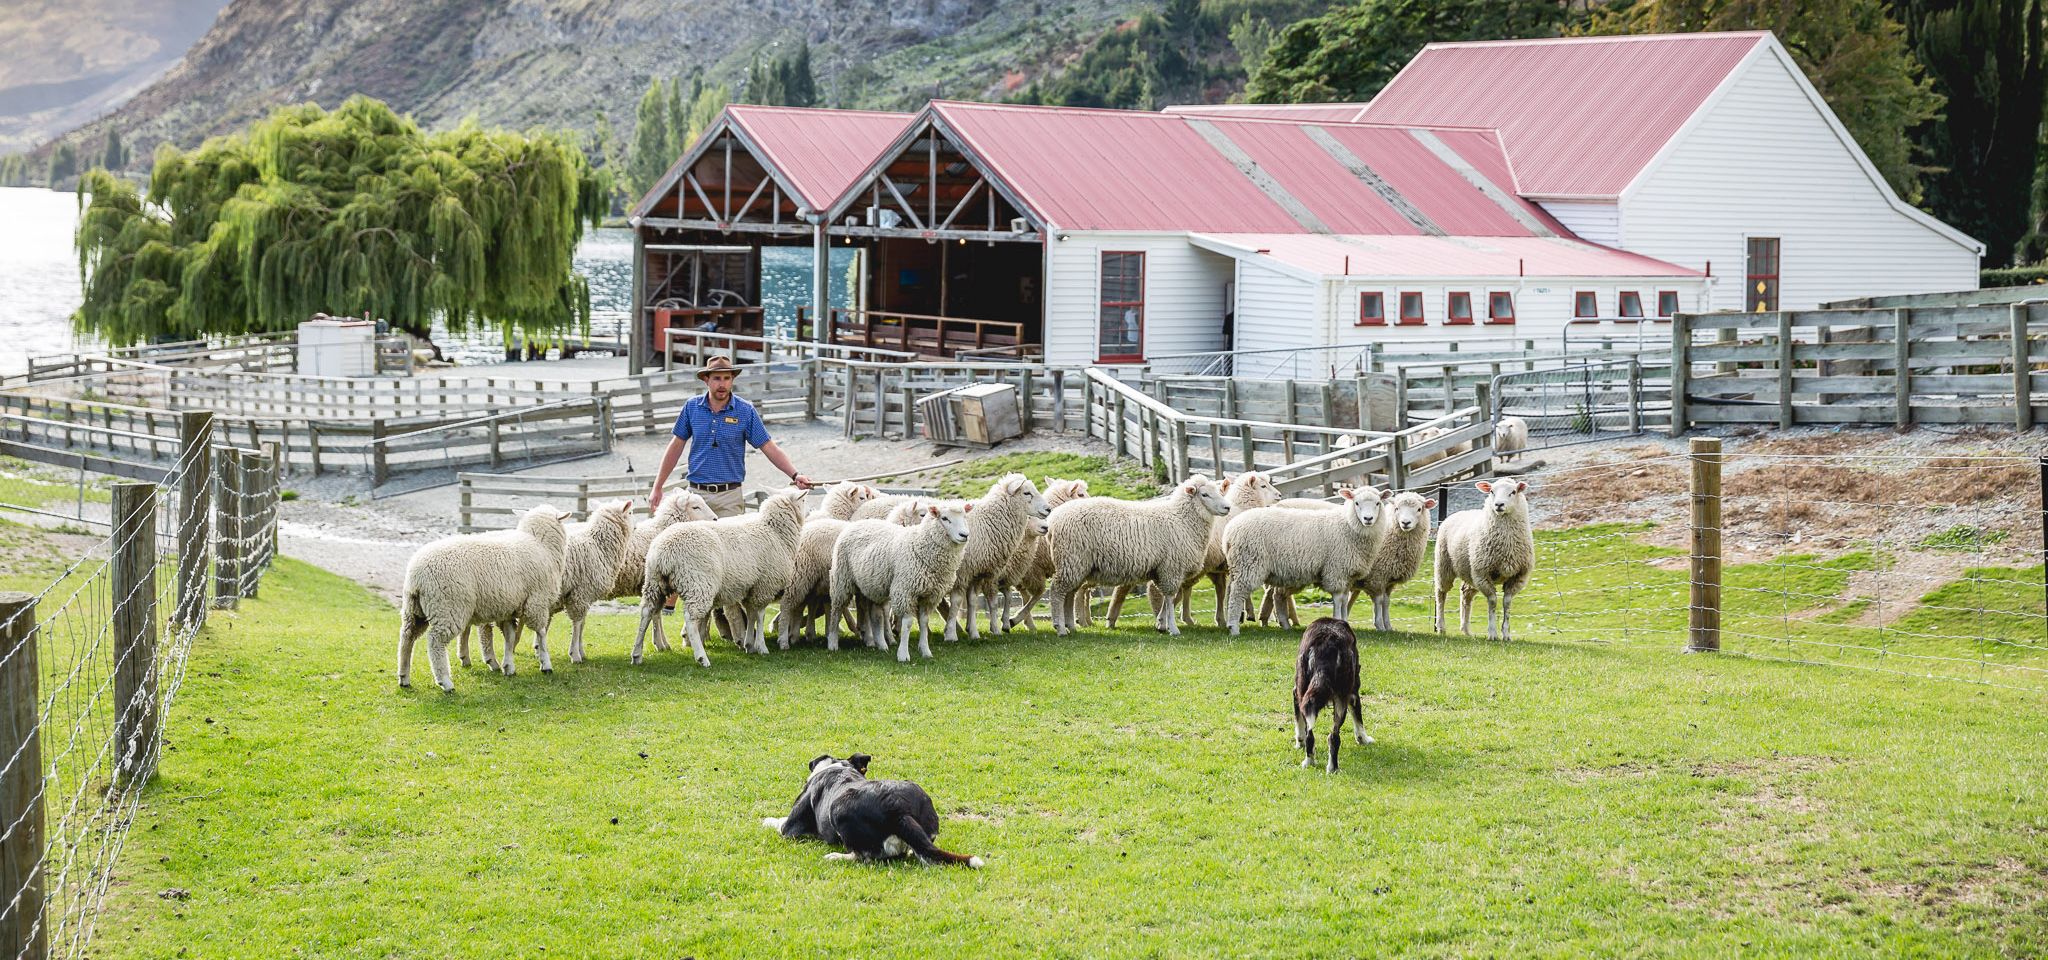 Работа в новой зеландии: вакансии, условия и перспективы